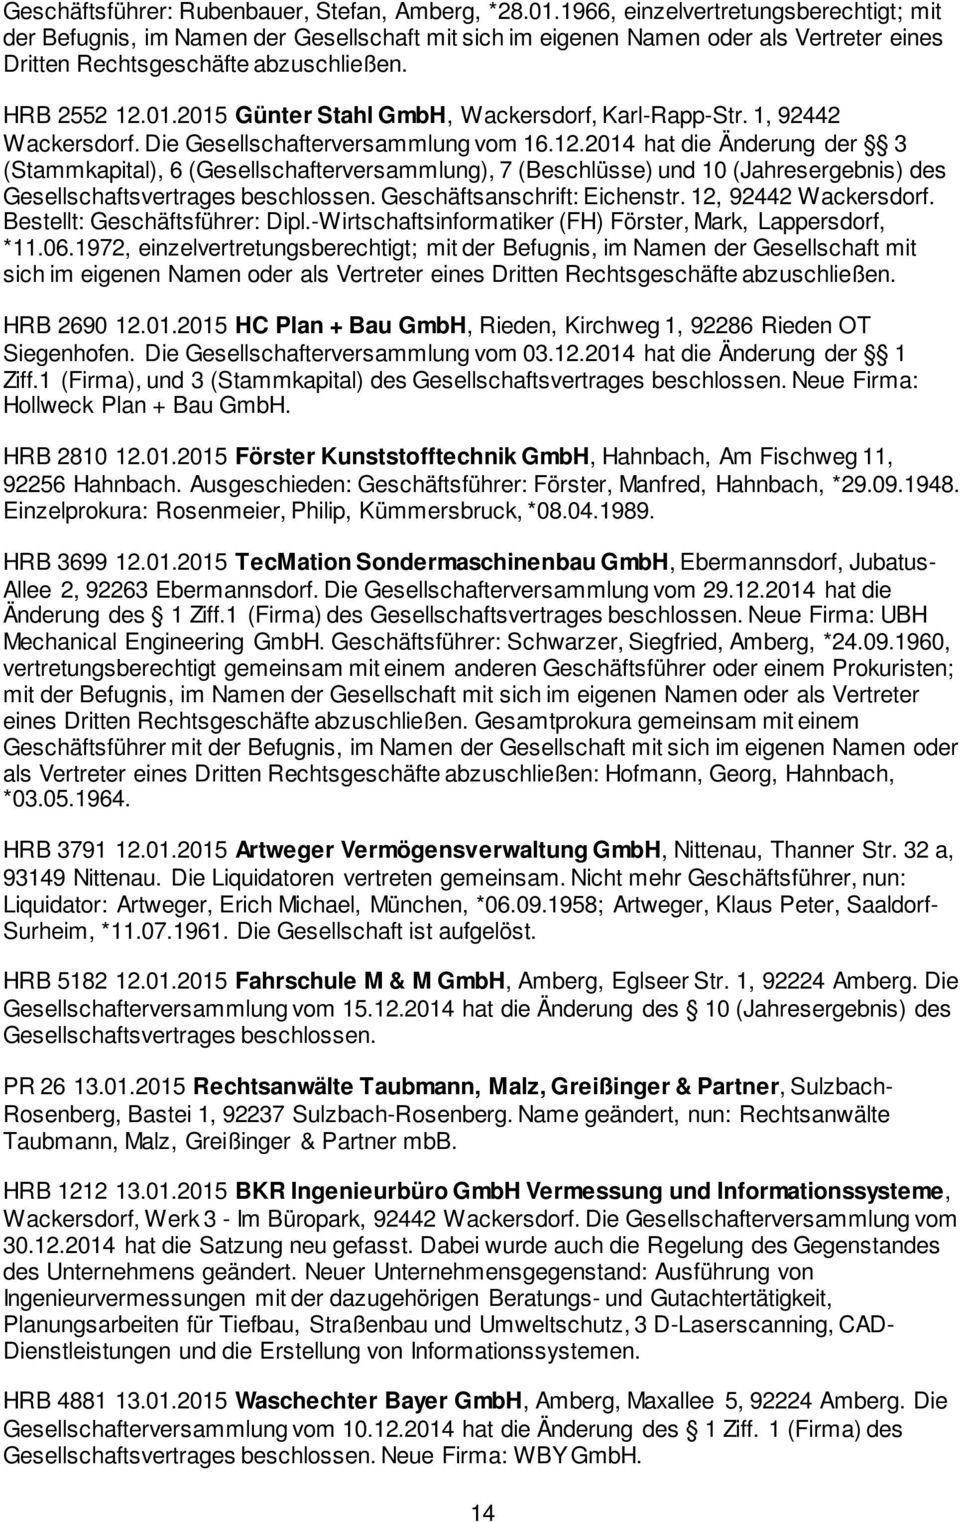 2015 Günter Stahl GmbH, Wackersdorf, Karl-Rapp-Str. 1, 92442 Wackersdorf. Die Gesellschafterversammlung vom 16.12.